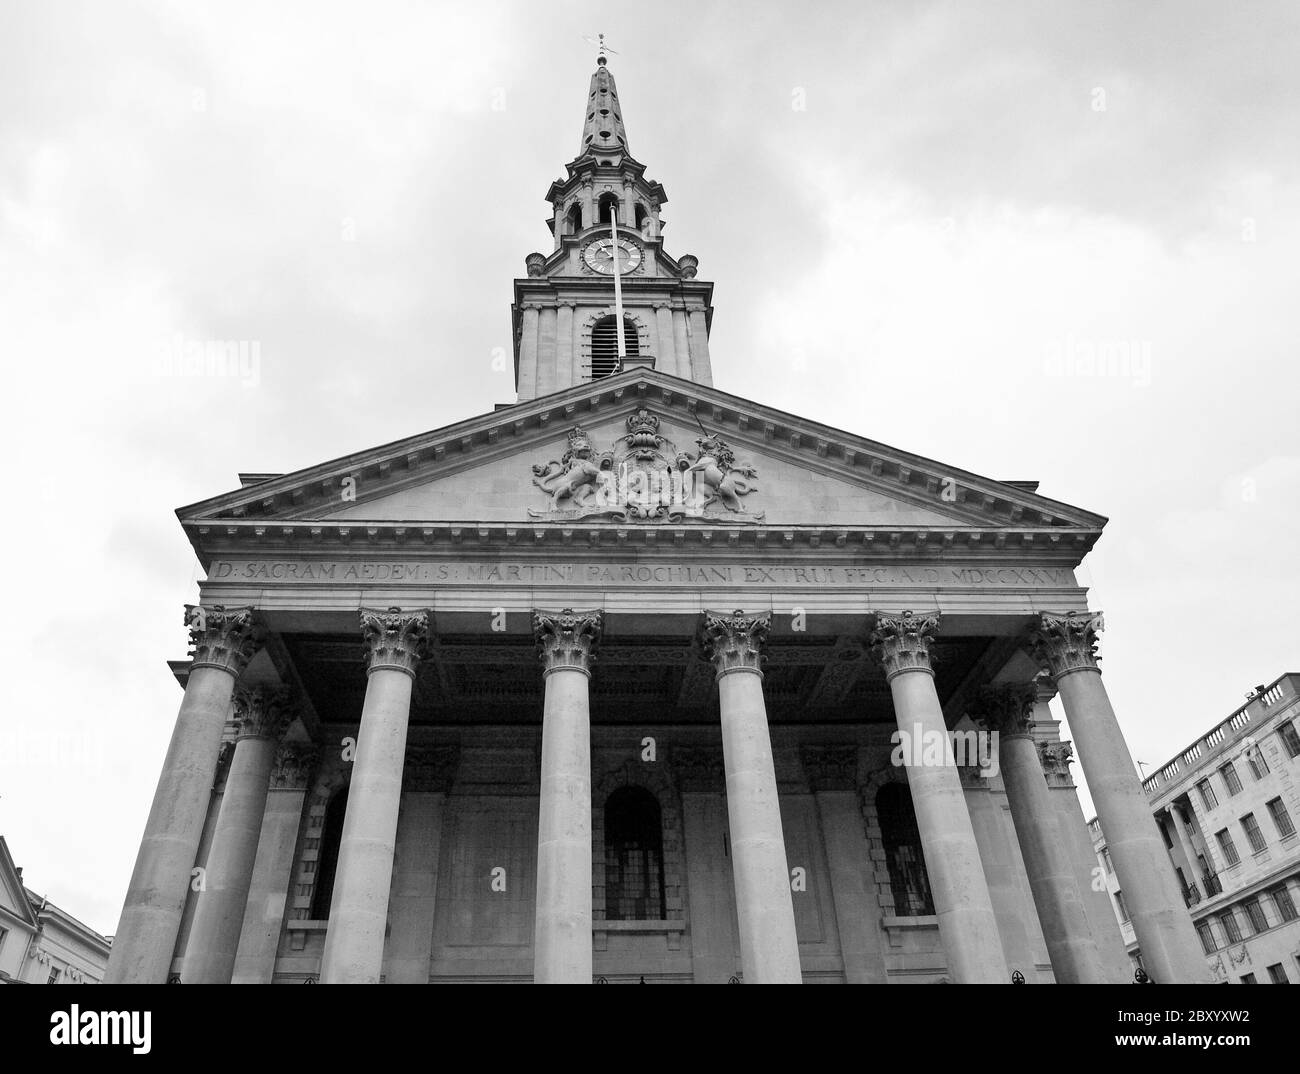 St Martin church, London Stock Photo